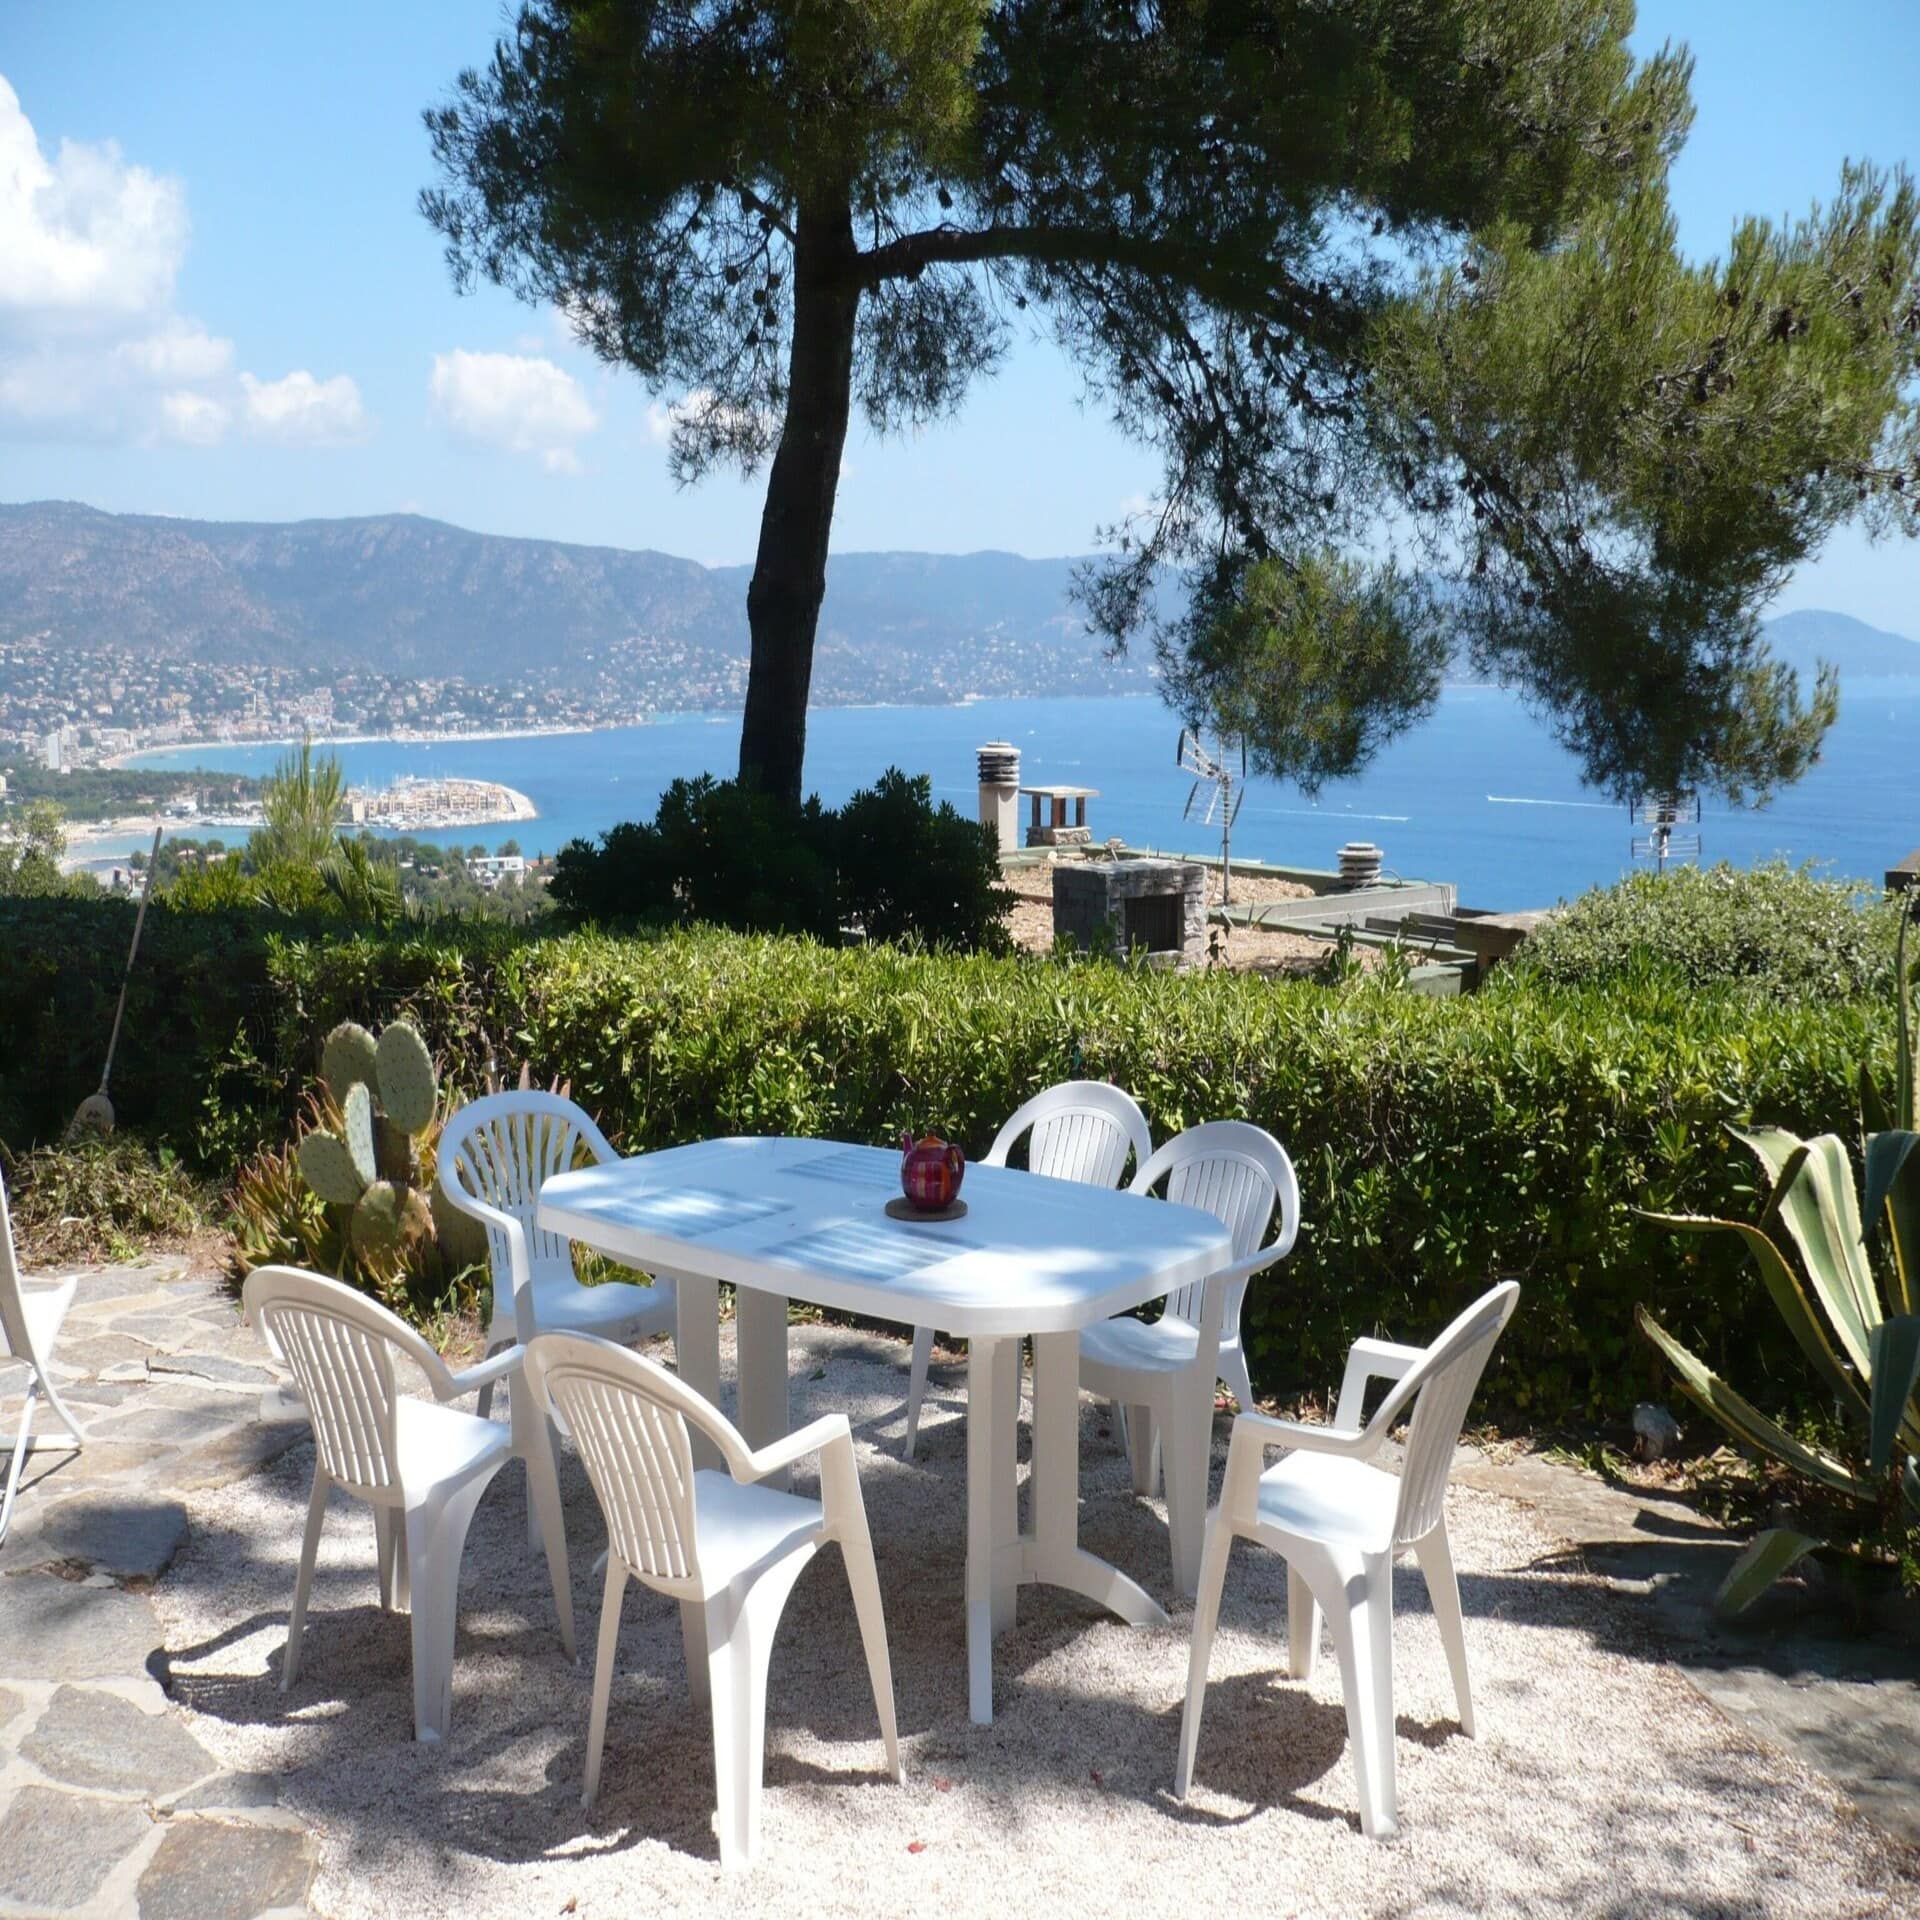 Weißer Tisch mit 6 Stühlen auf einer Terrasse, mit Blick auf den Wasser und einen Ort. 